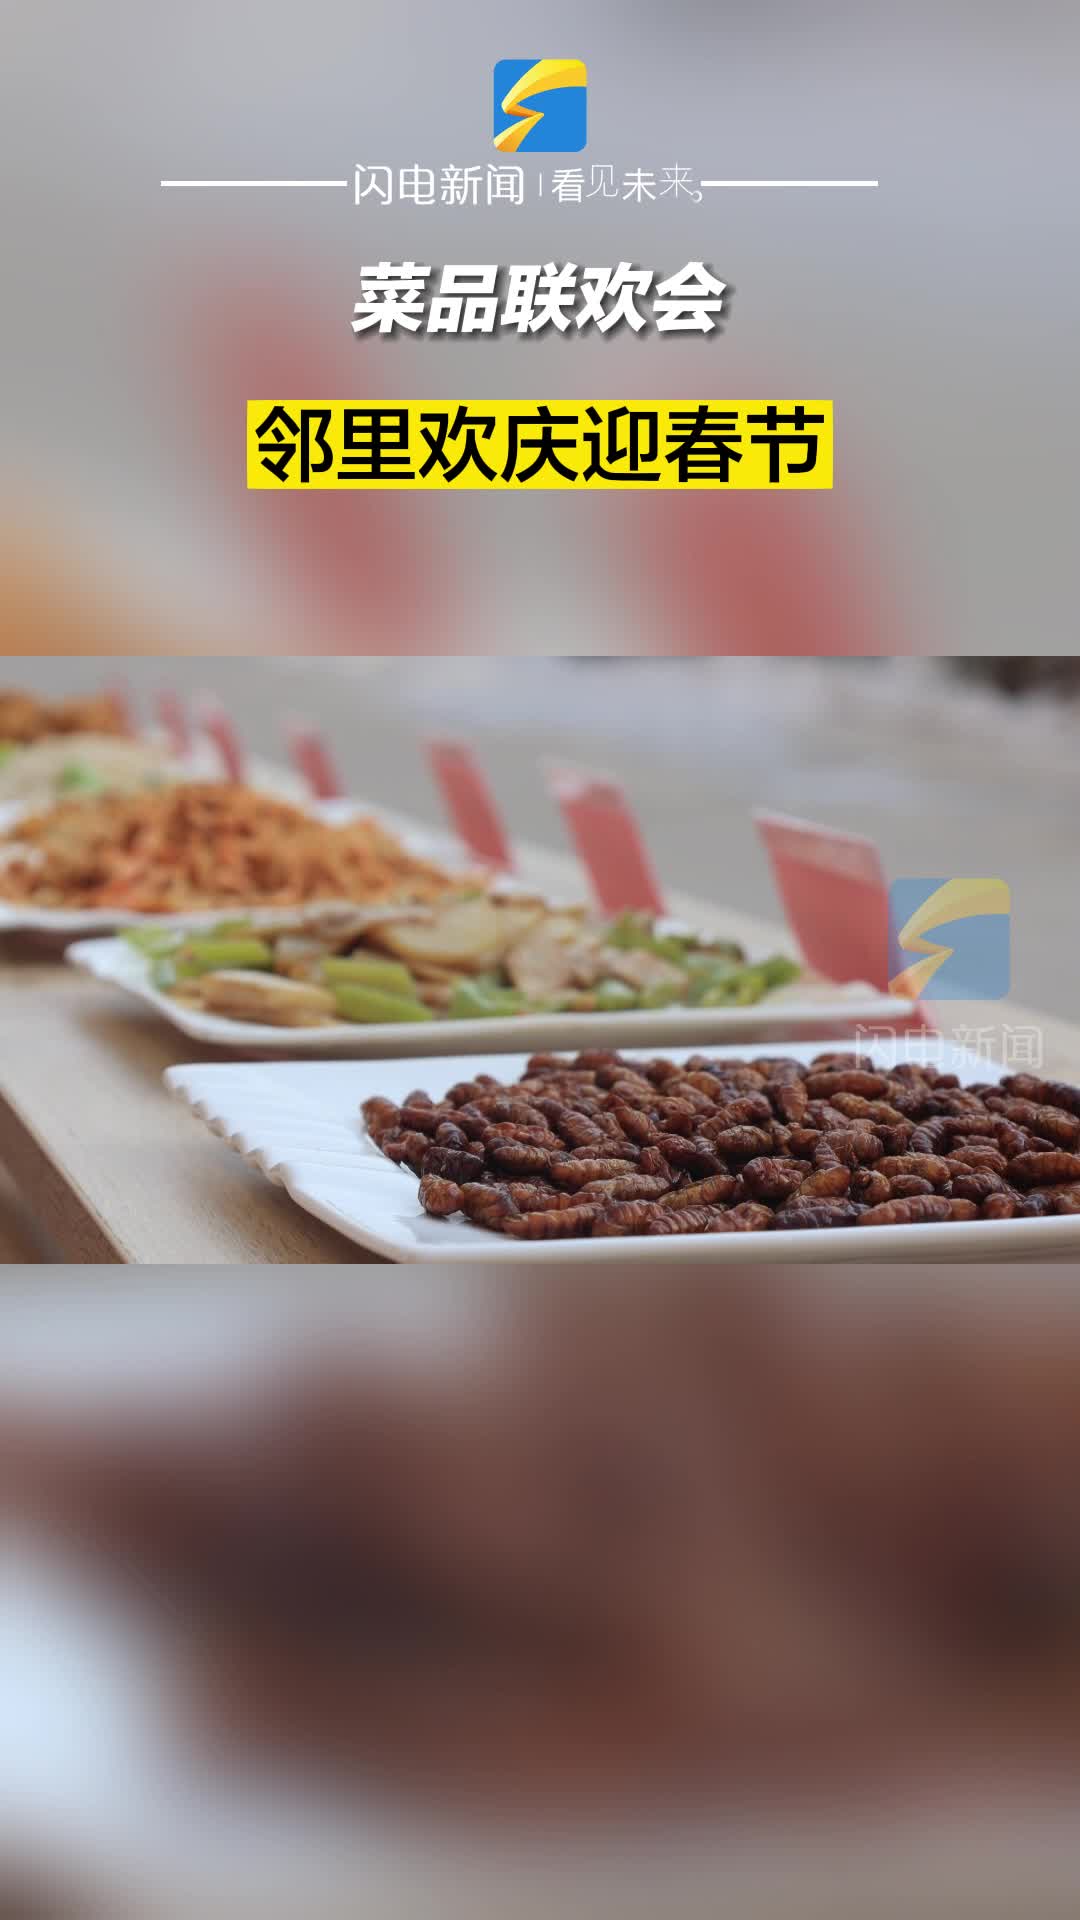 滨州惠民：菜品联欢会 邻里欢庆迎春节